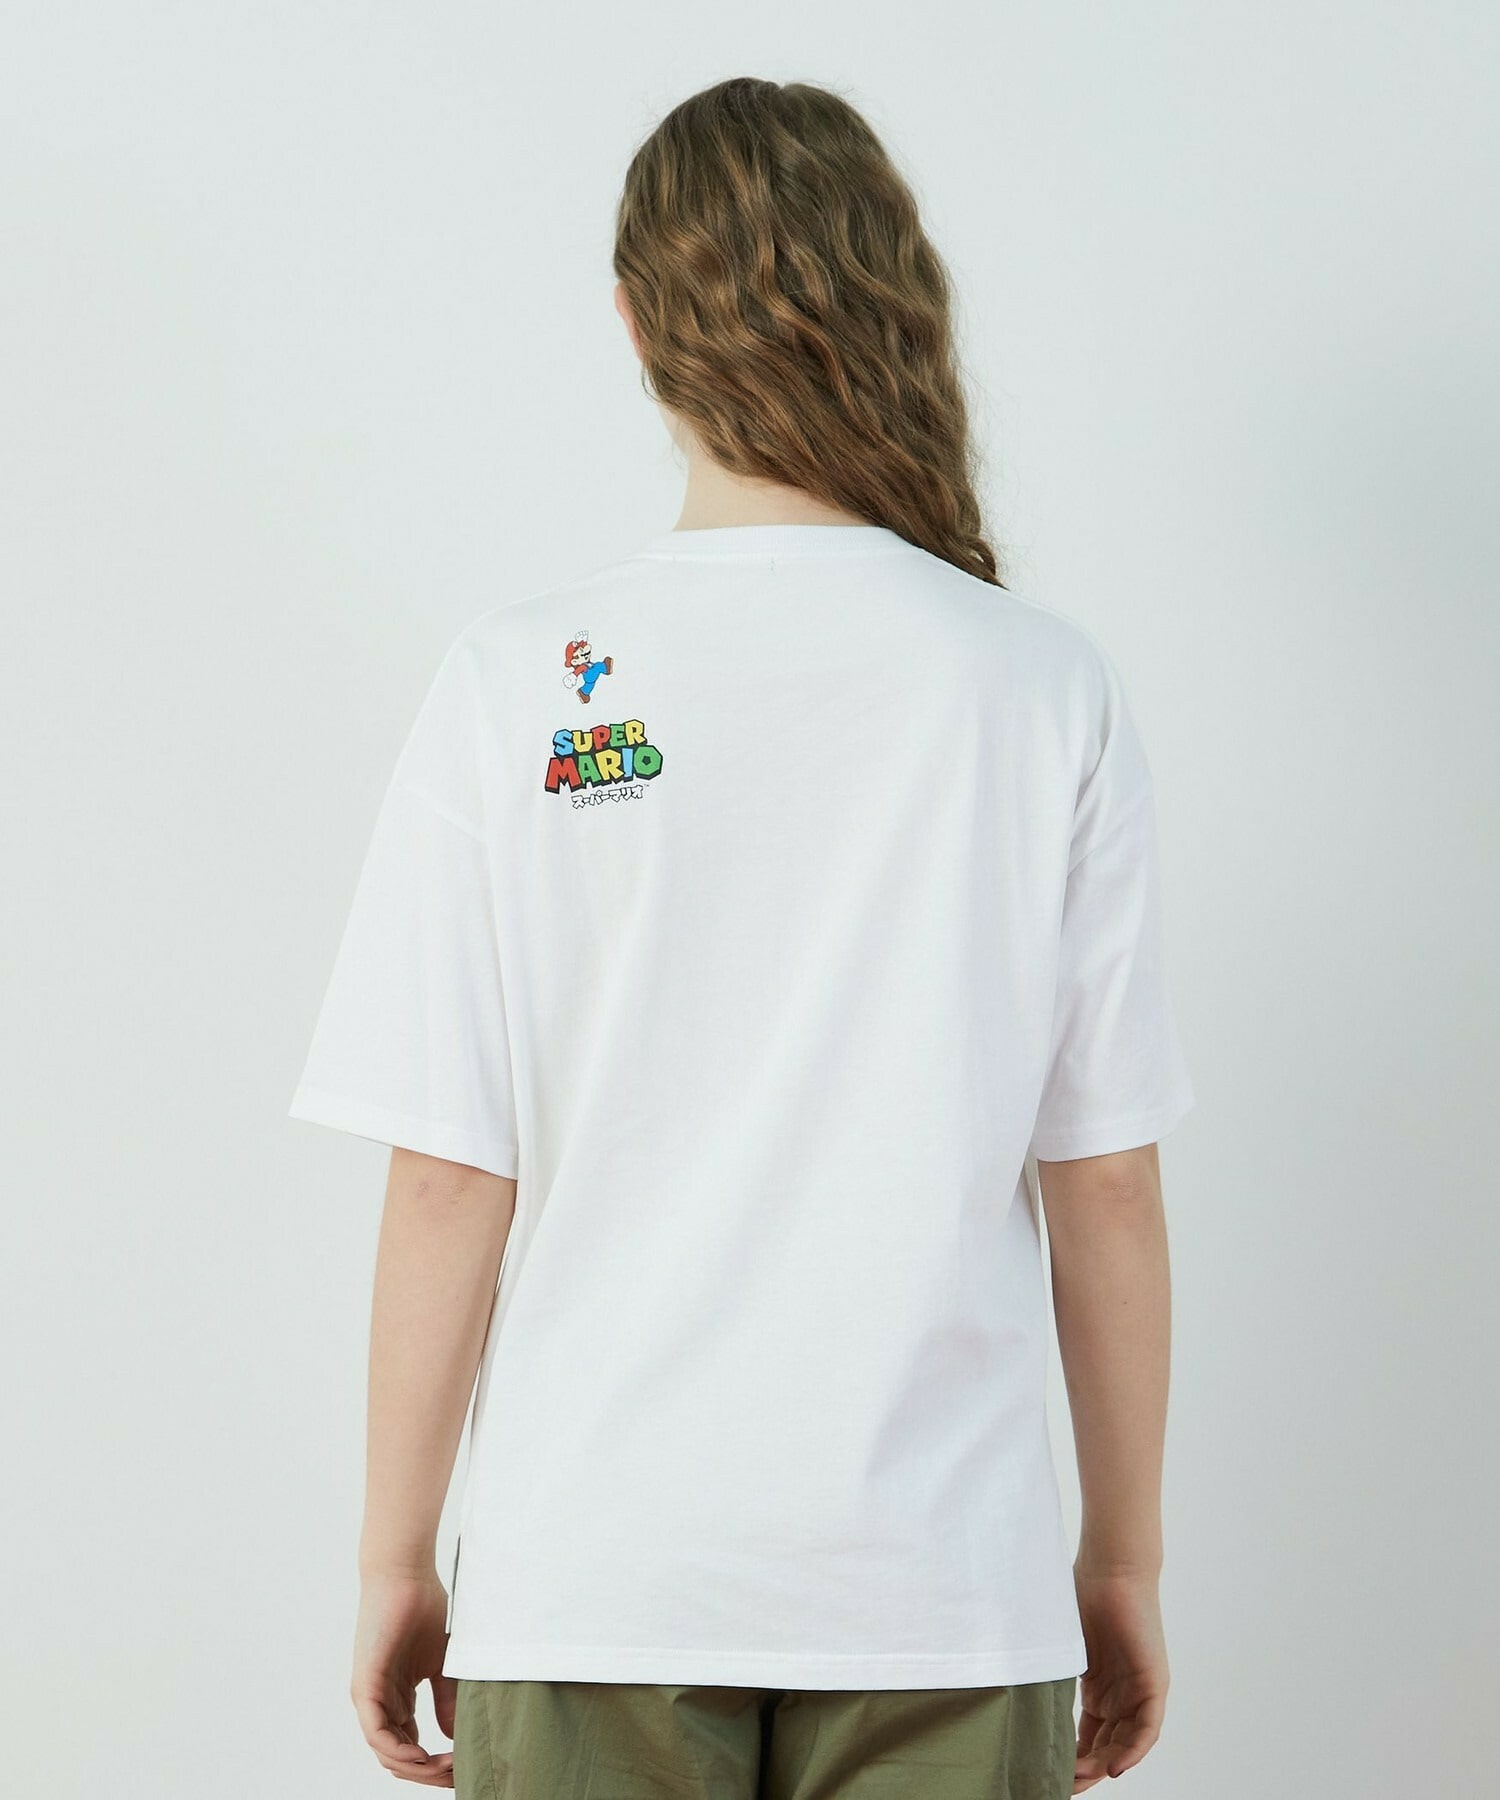 【FRAPBOIS】スーパーマリオ 限定商品 ポケットTシャツ 詳細画像 ホワイト 11